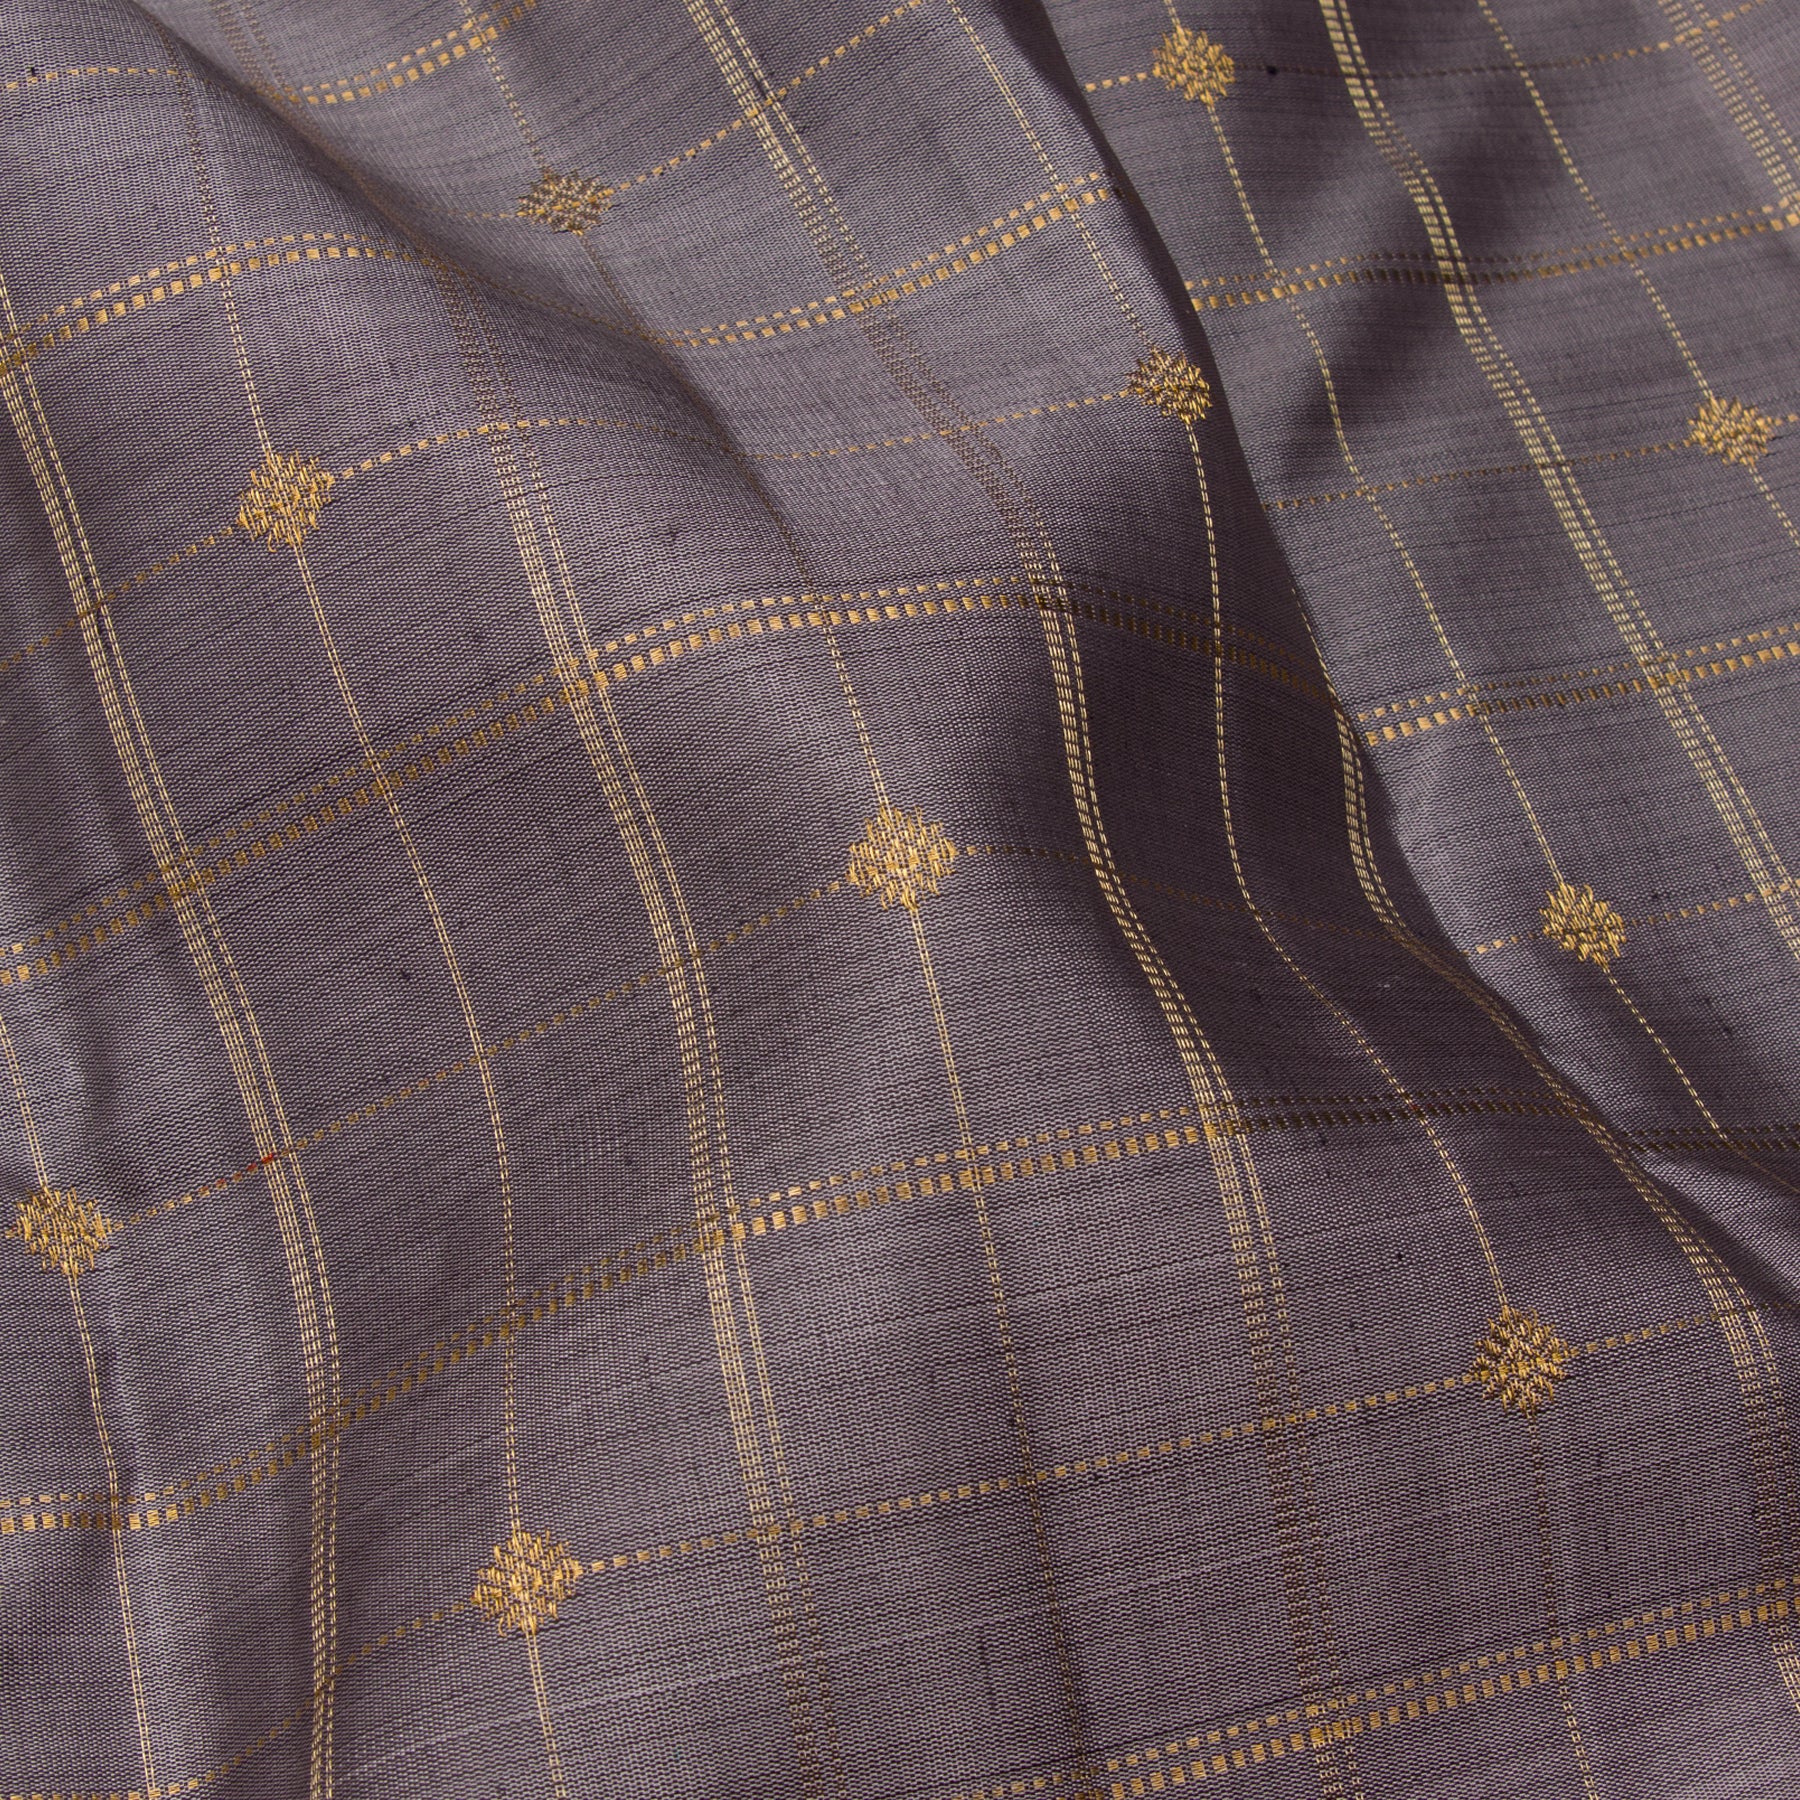 Kanakavalli Kanjivaram Silk Sari 23-599-HS001-13915 - Fabric View